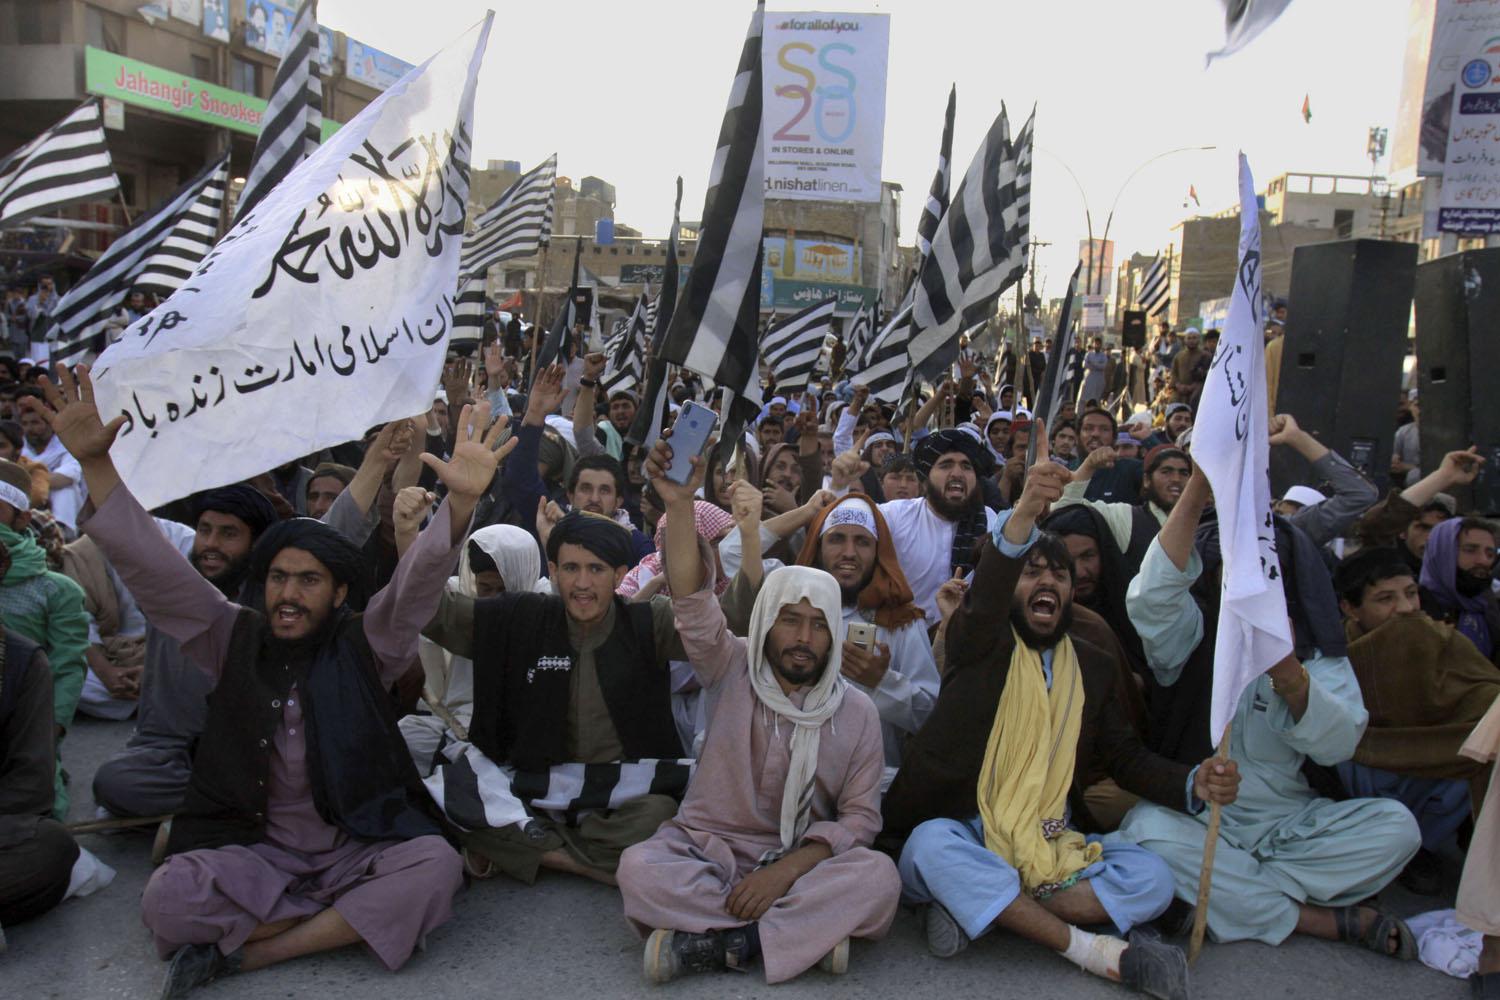 كل من يبارك "نصر" طالبان مرتد في حكم داعش